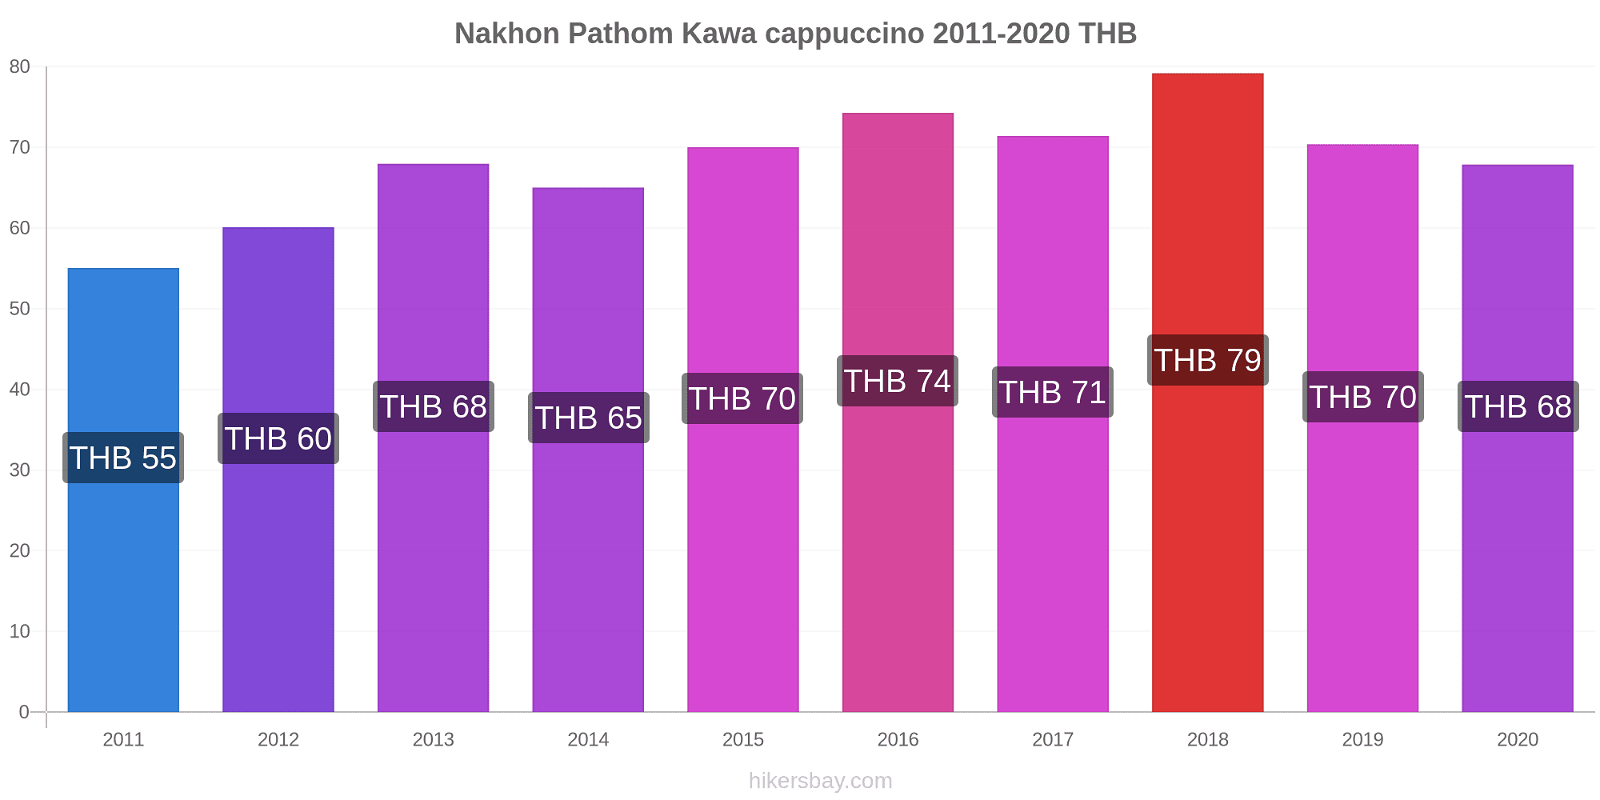 Nakhon Pathom zmiany cen Kawa cappuccino hikersbay.com